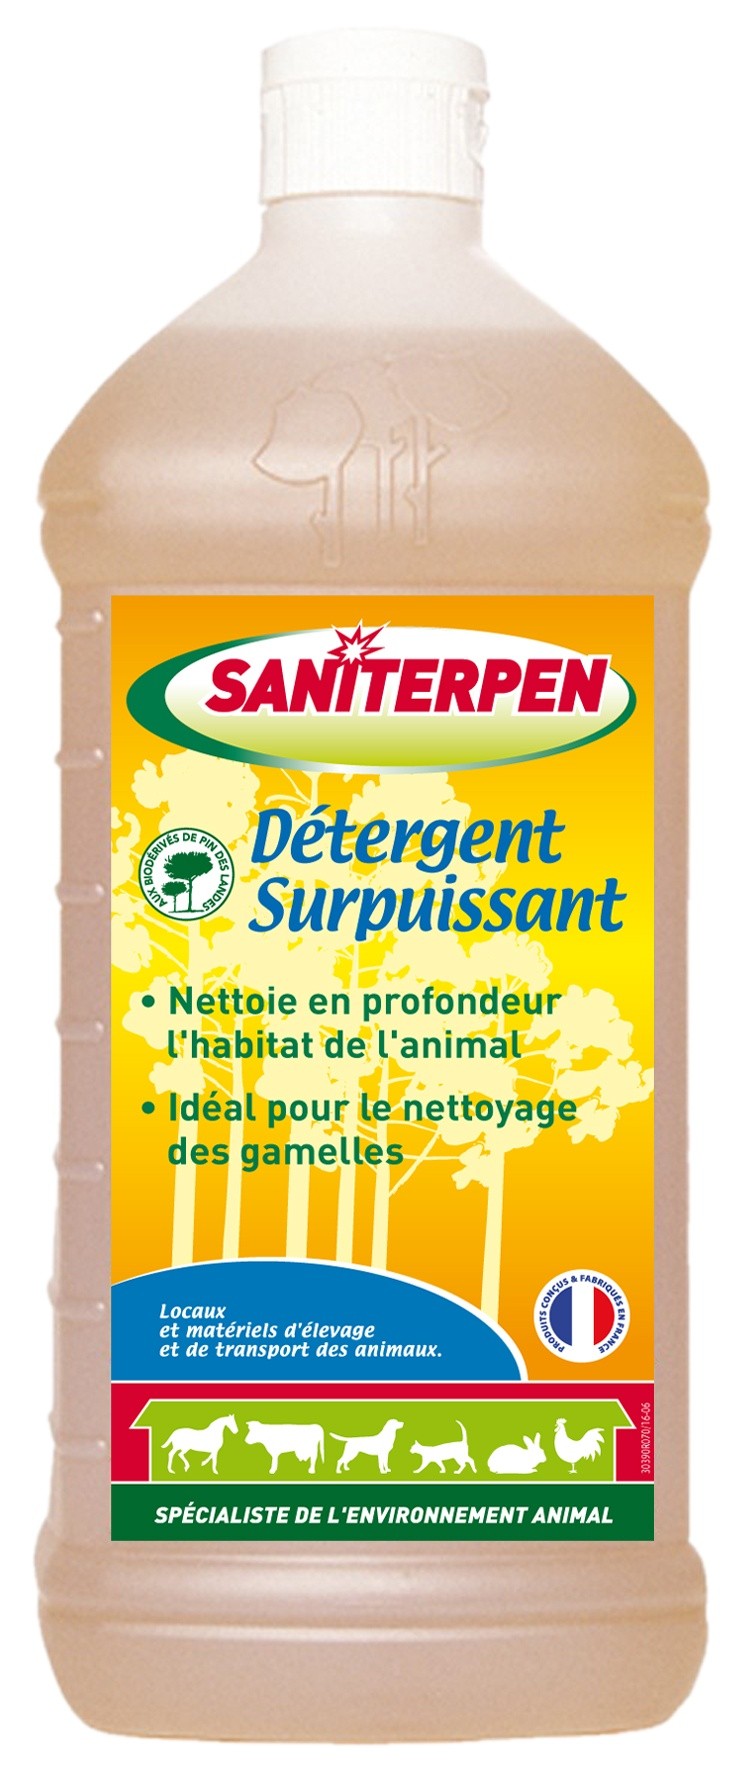 Saniterpen Bidon 5 litre → Détergent surpuissant nettoyage